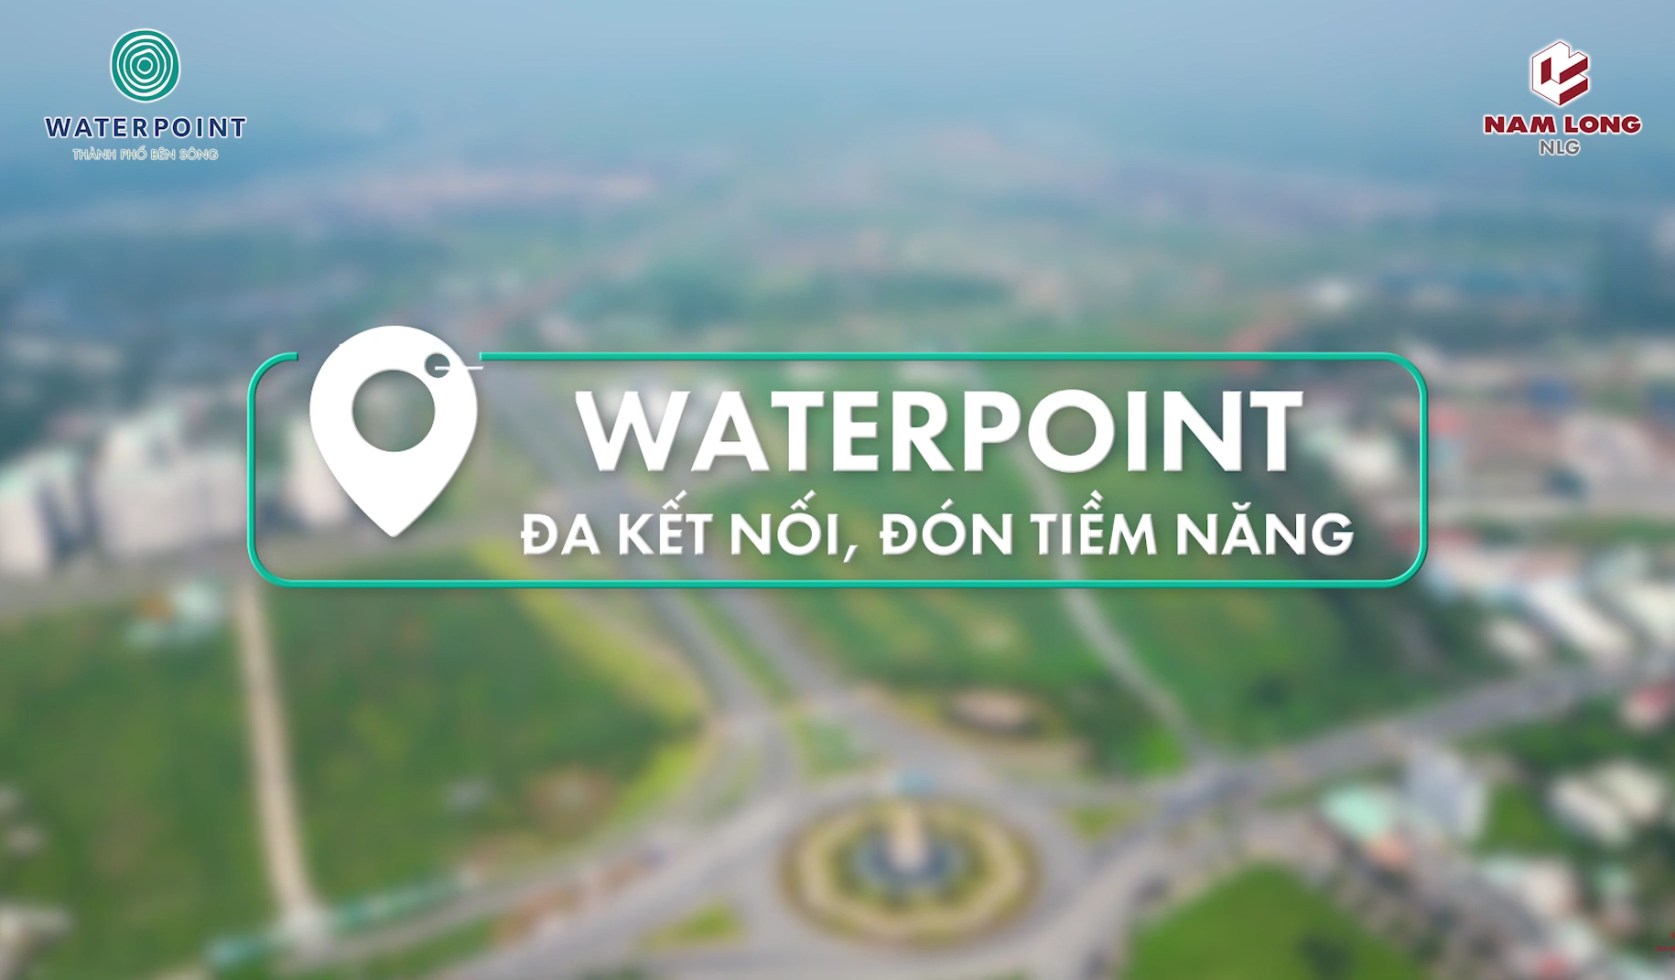 Waterpoint: Đa kết nối, đón tiềm năng